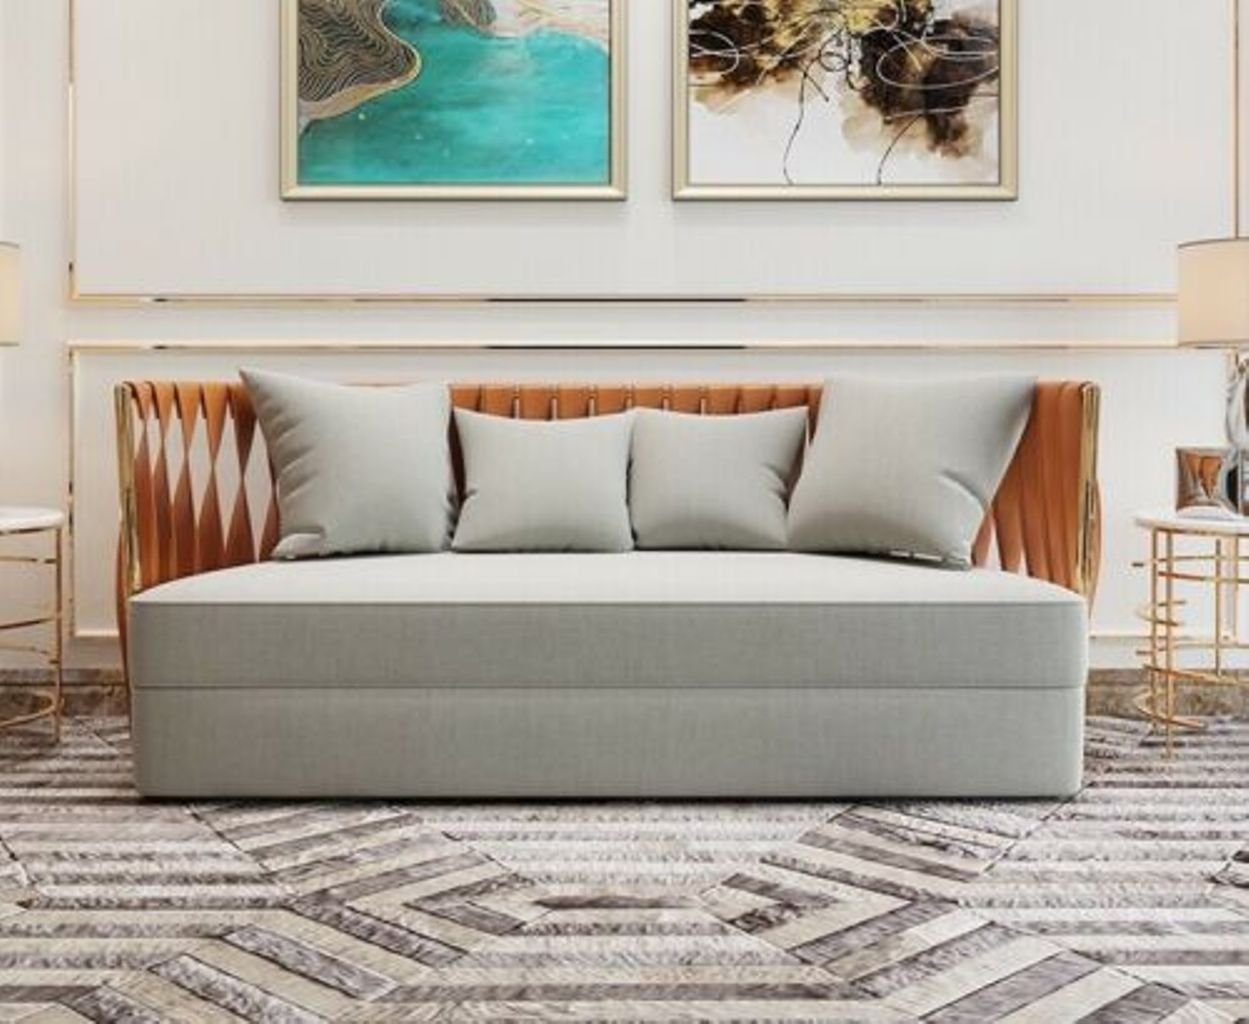 JVmoebel 3-Sitzer, Dreisitzer Couch Polster Design Sofa 3er Grau/Orange